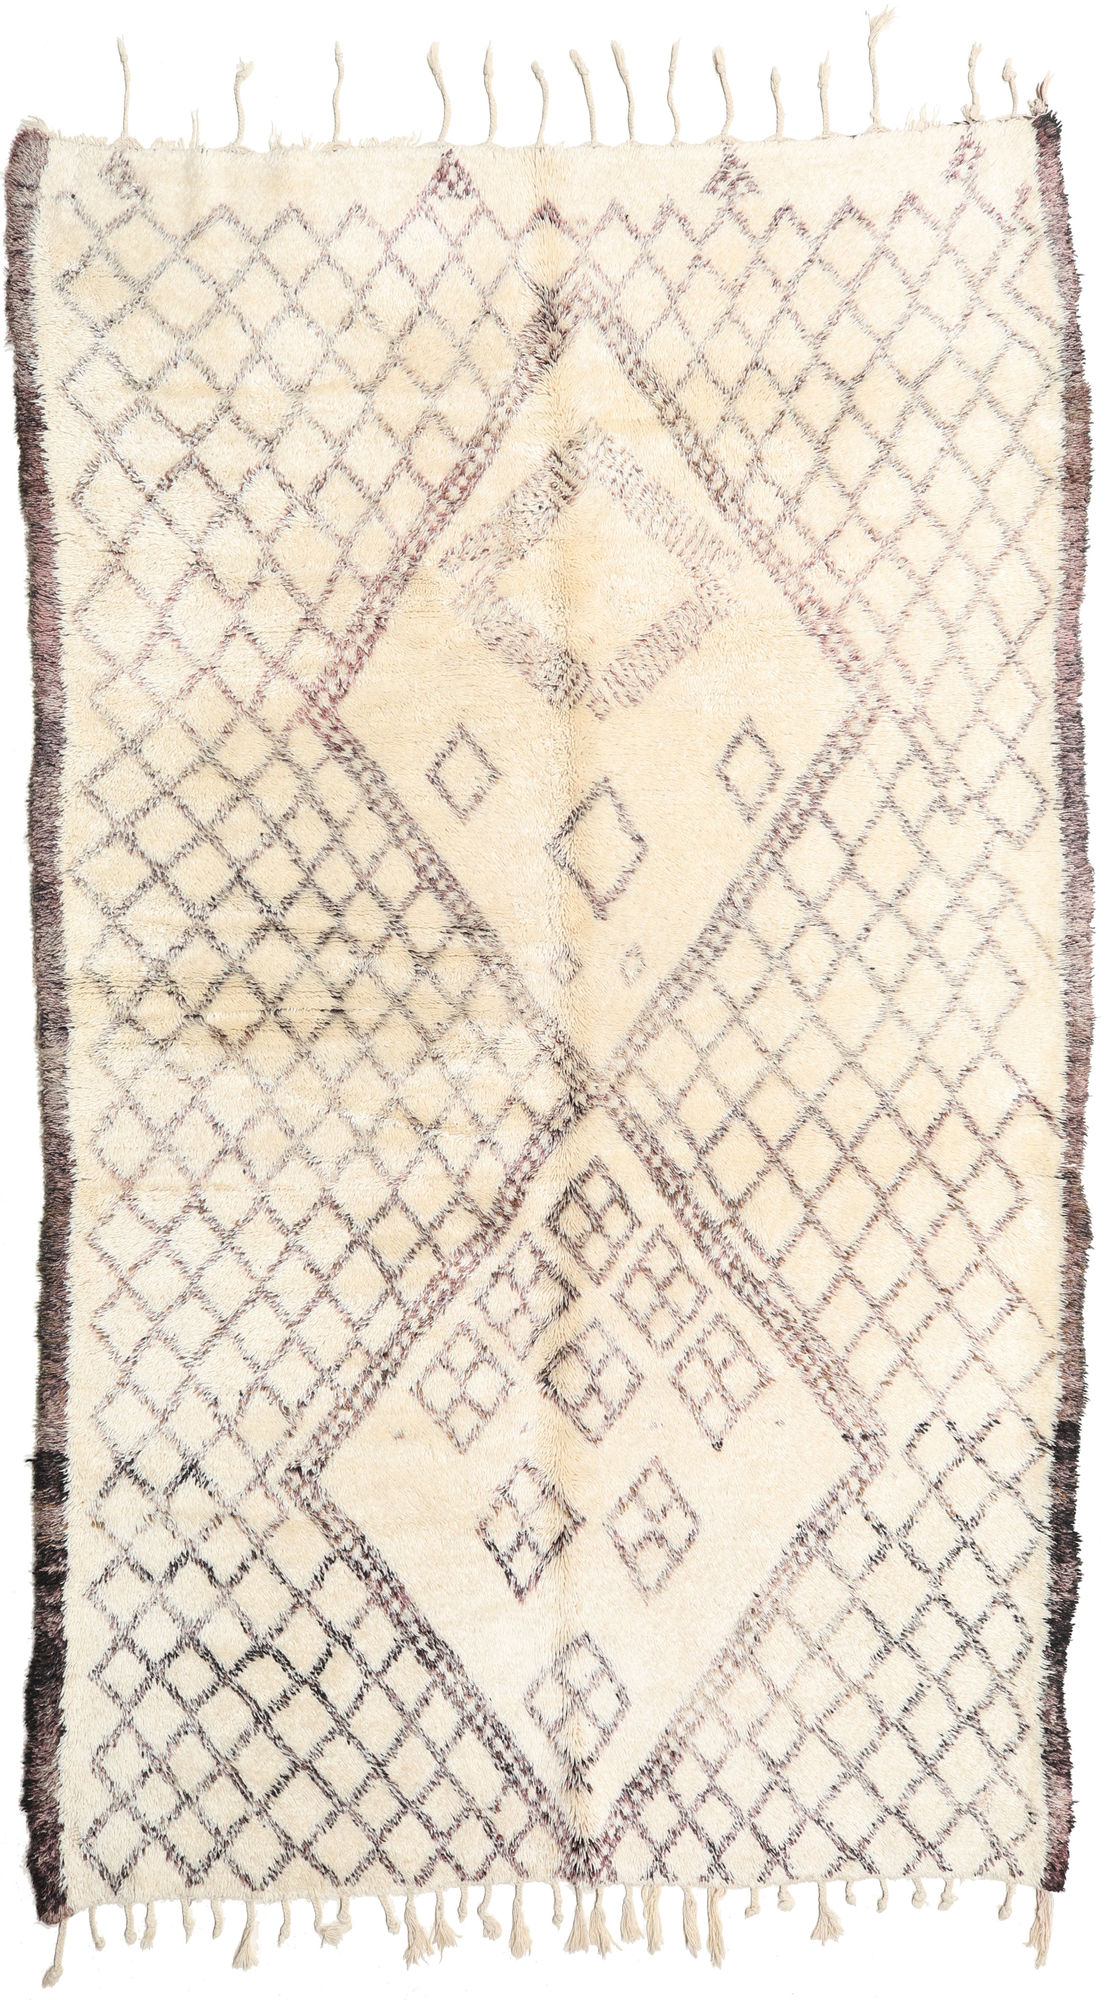 Berber Carpet Beni Ouarain Ethnic